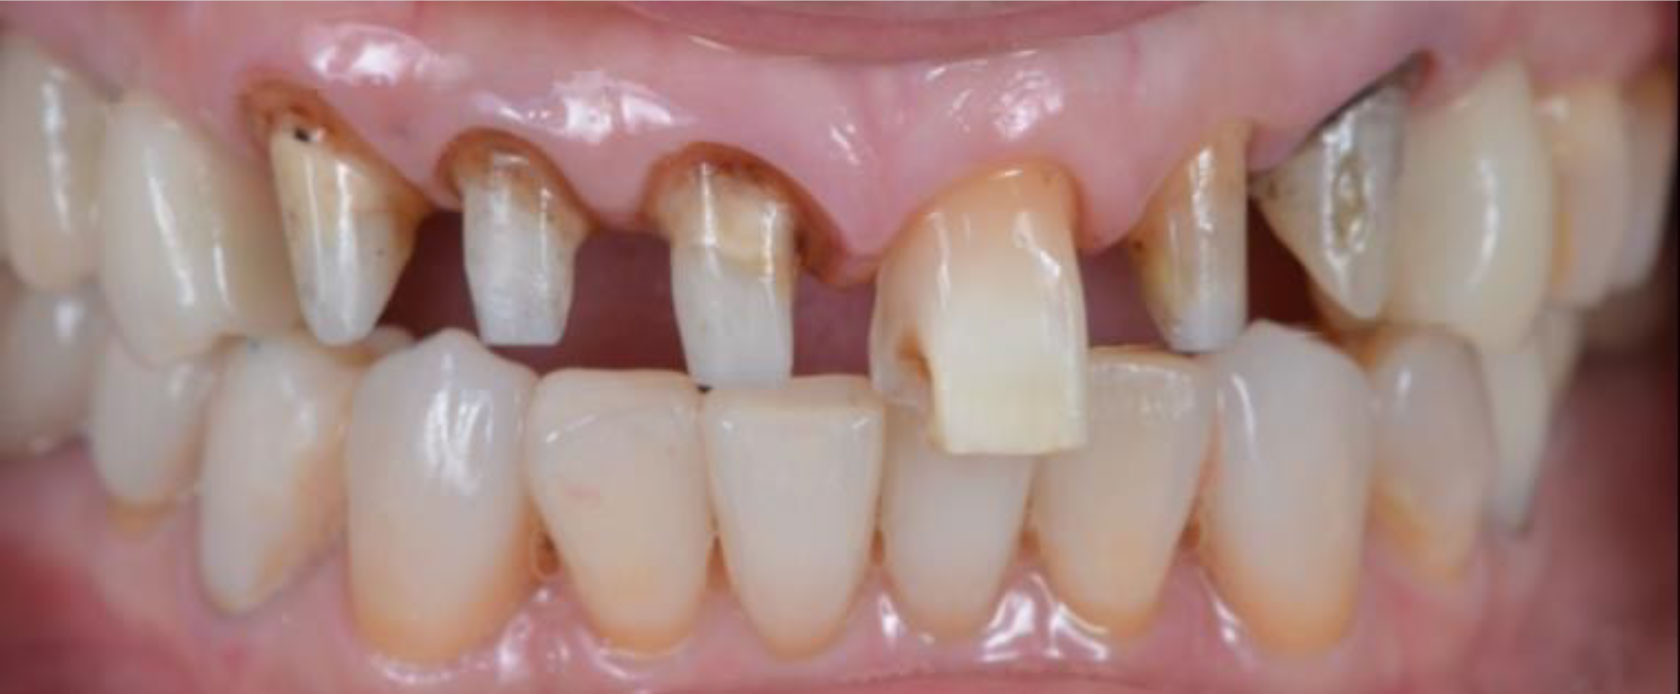 前歯の根本が黒くなり、審美性にこだわる治診療をご希望された患者さま